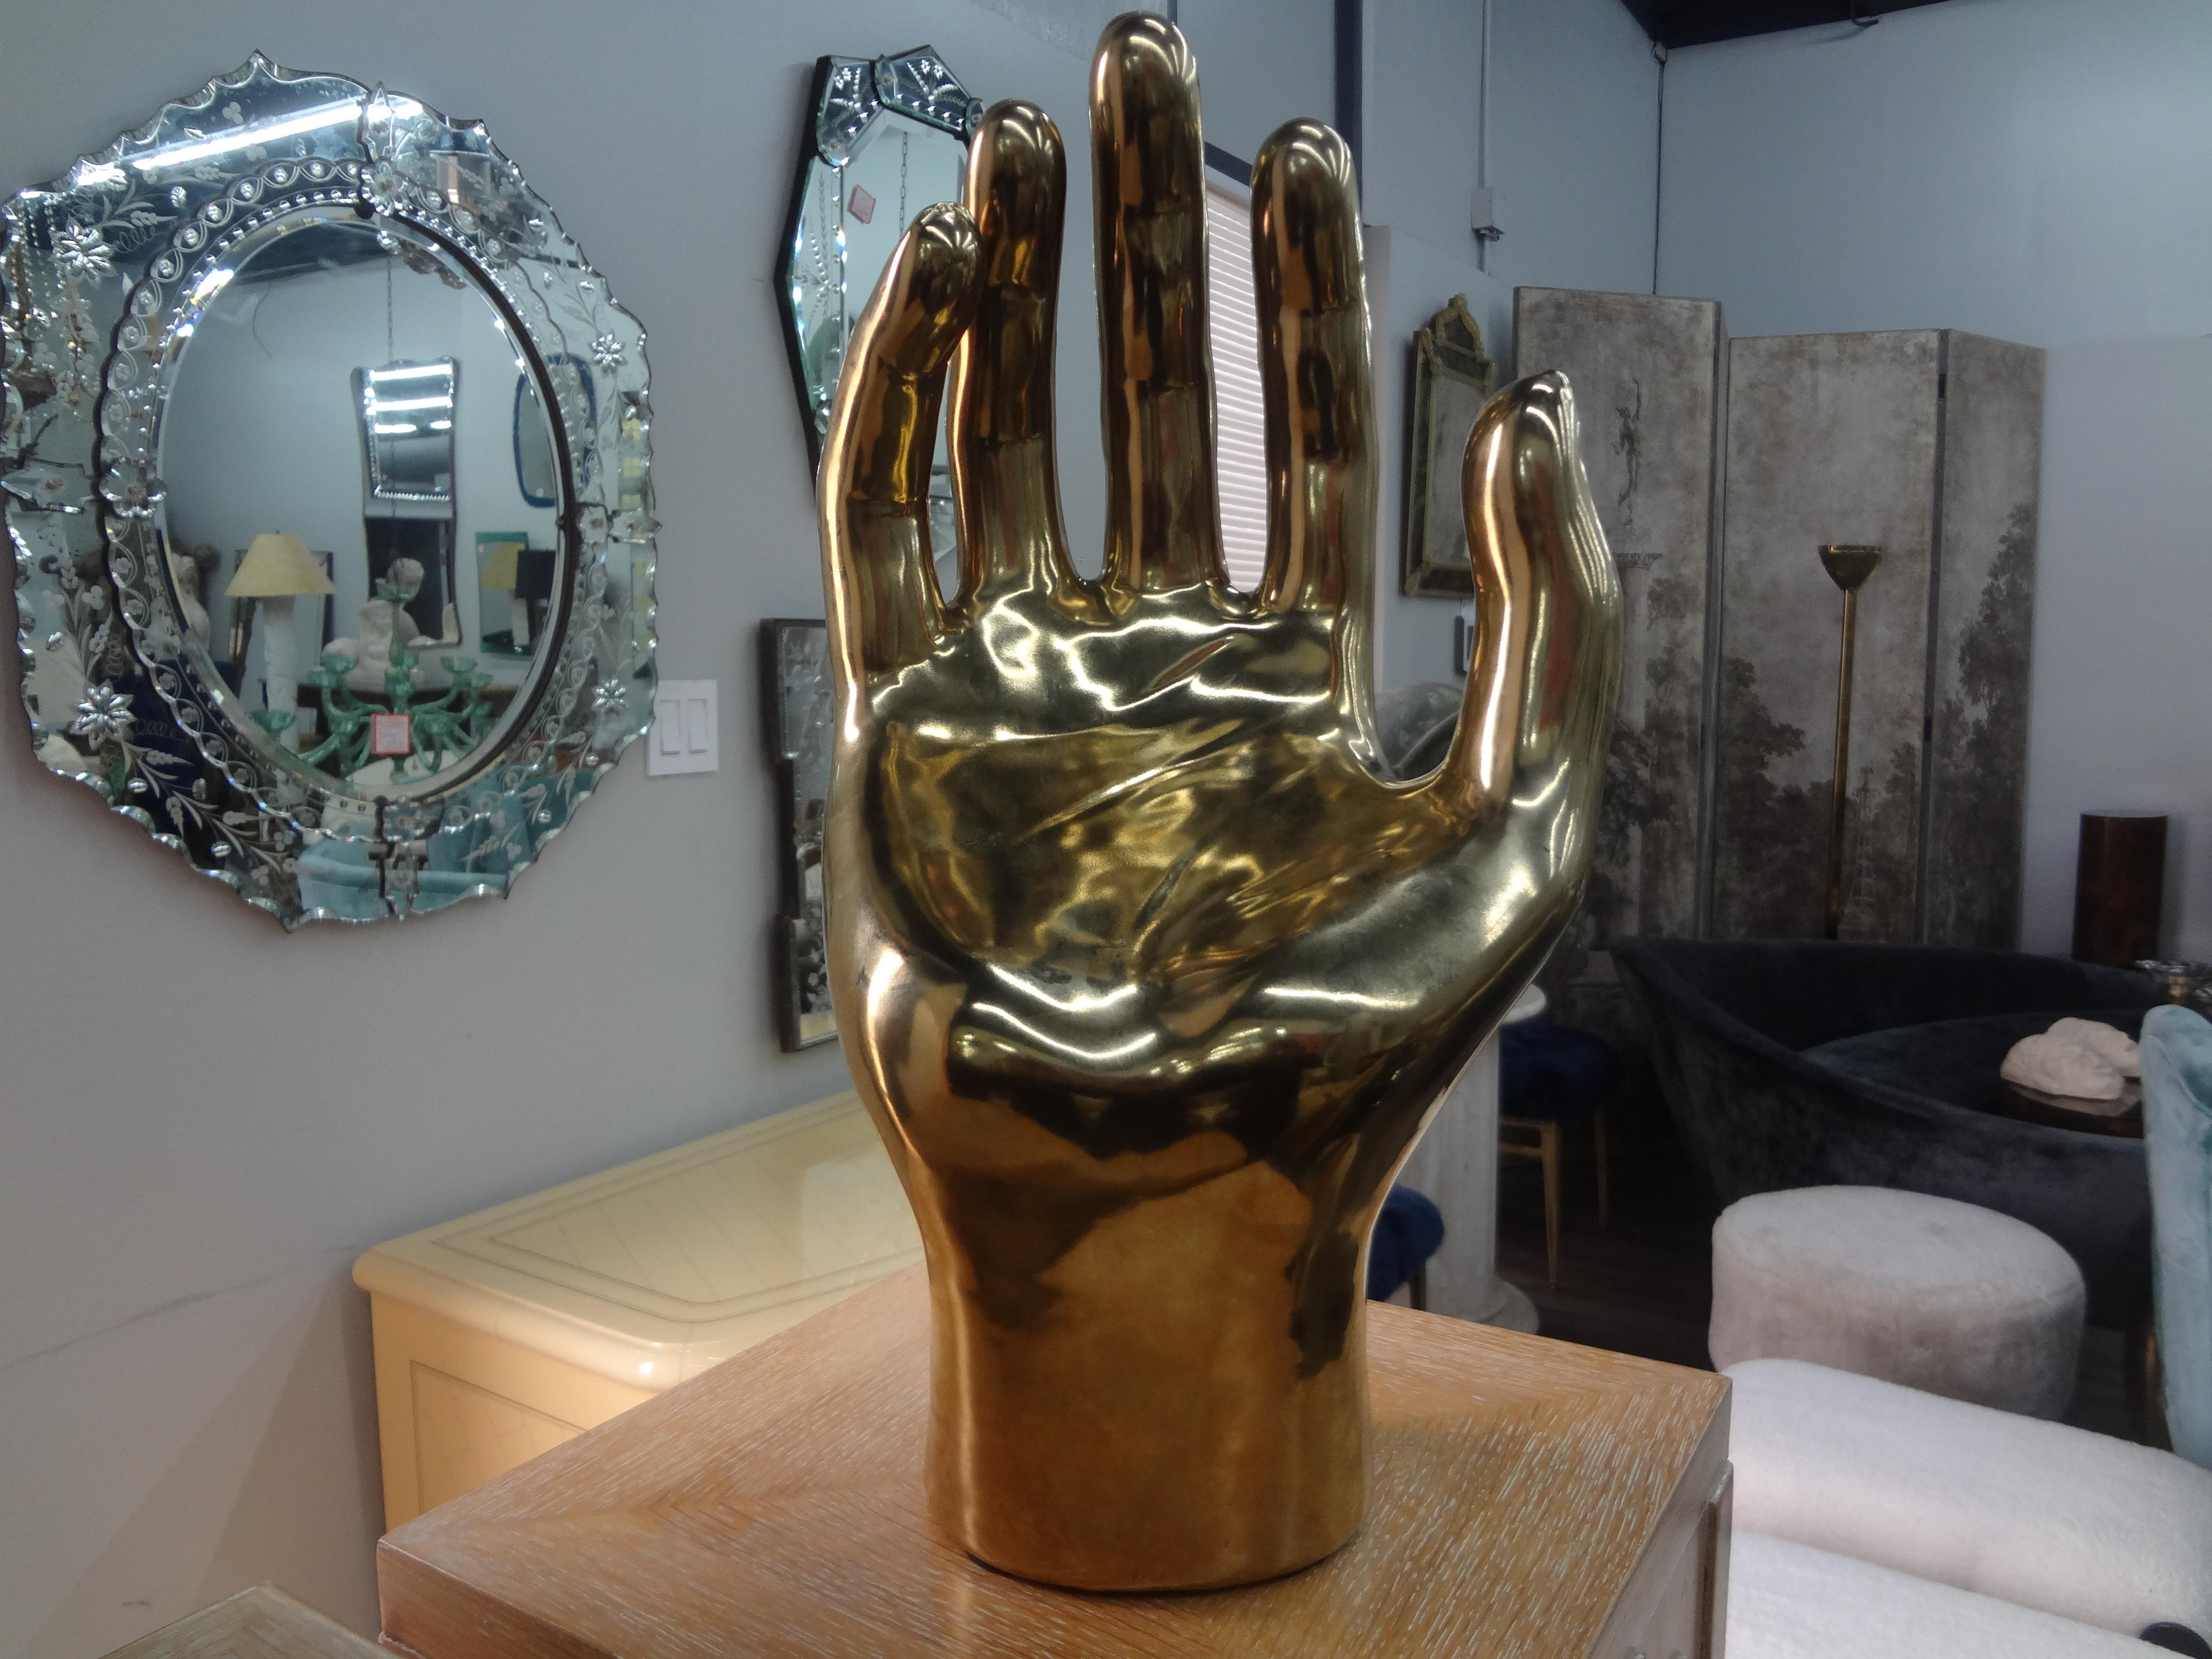 Grande sculpture à main vintage en céramique émaillée et dorée.
Cette étonnante sculpture en céramique émaillée et dorée du 20e siècle représente une grande main. 
Excellent accessoire pour la table basse ou la bibliothèque !